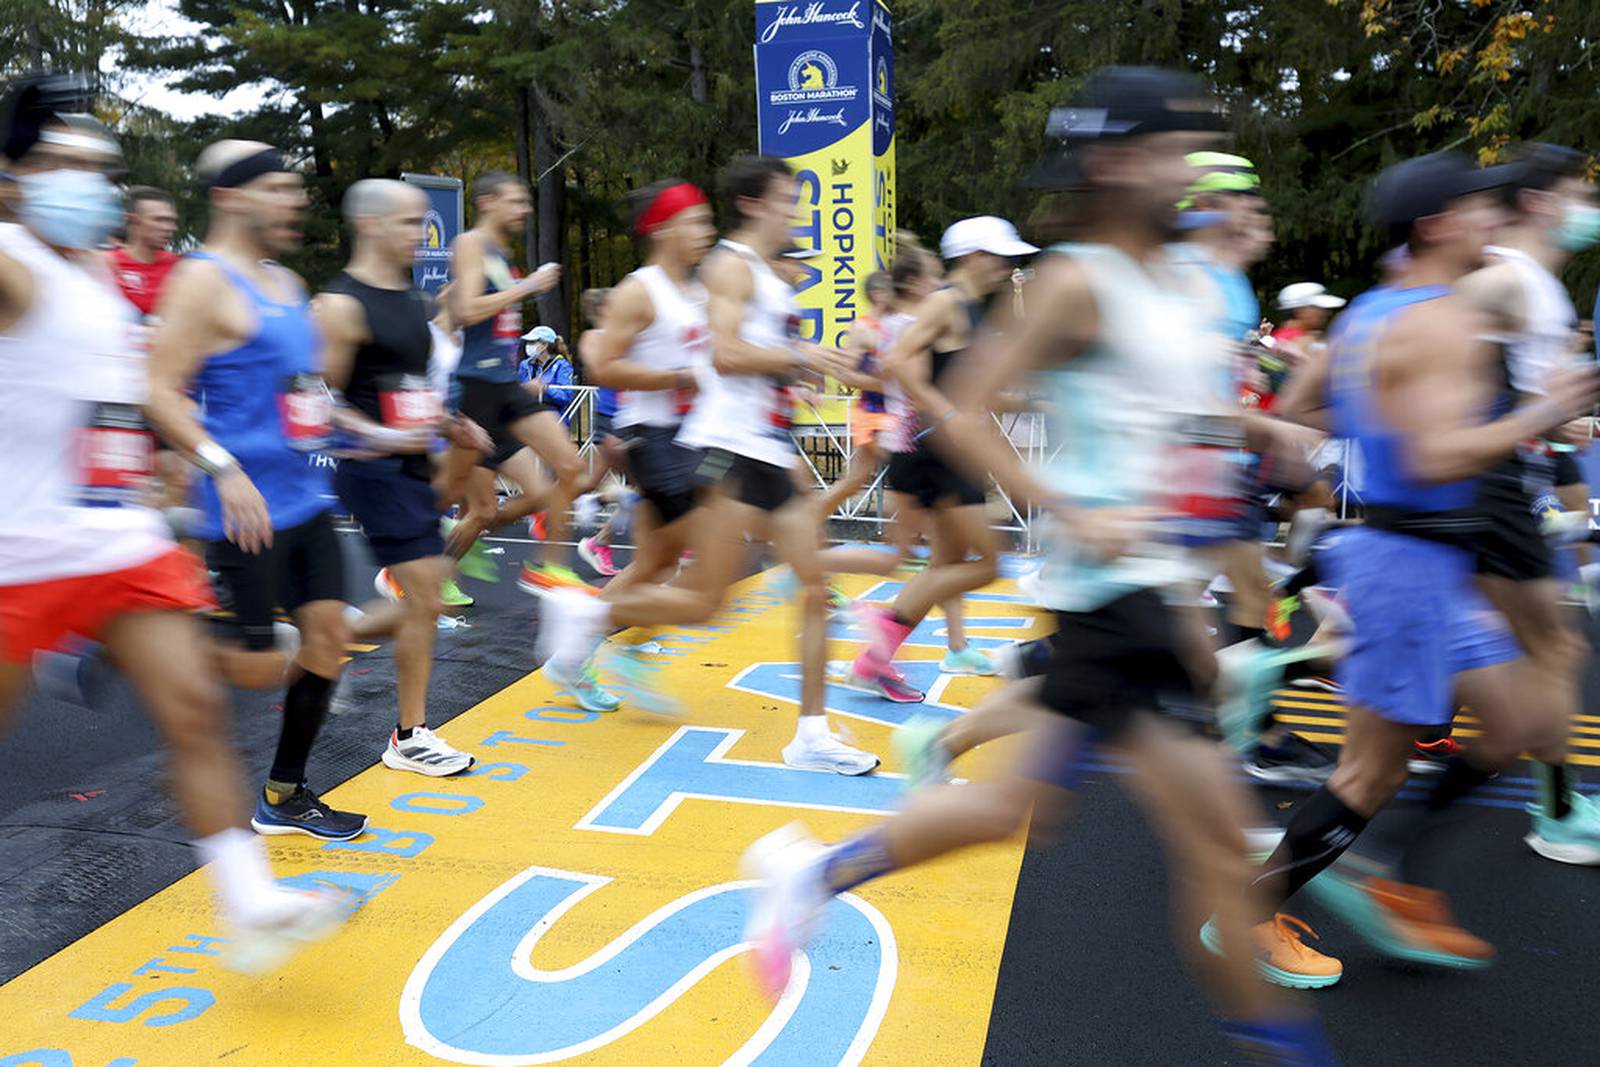 BAA offers refund to Ukrainians registered in 126th Boston Marathon or